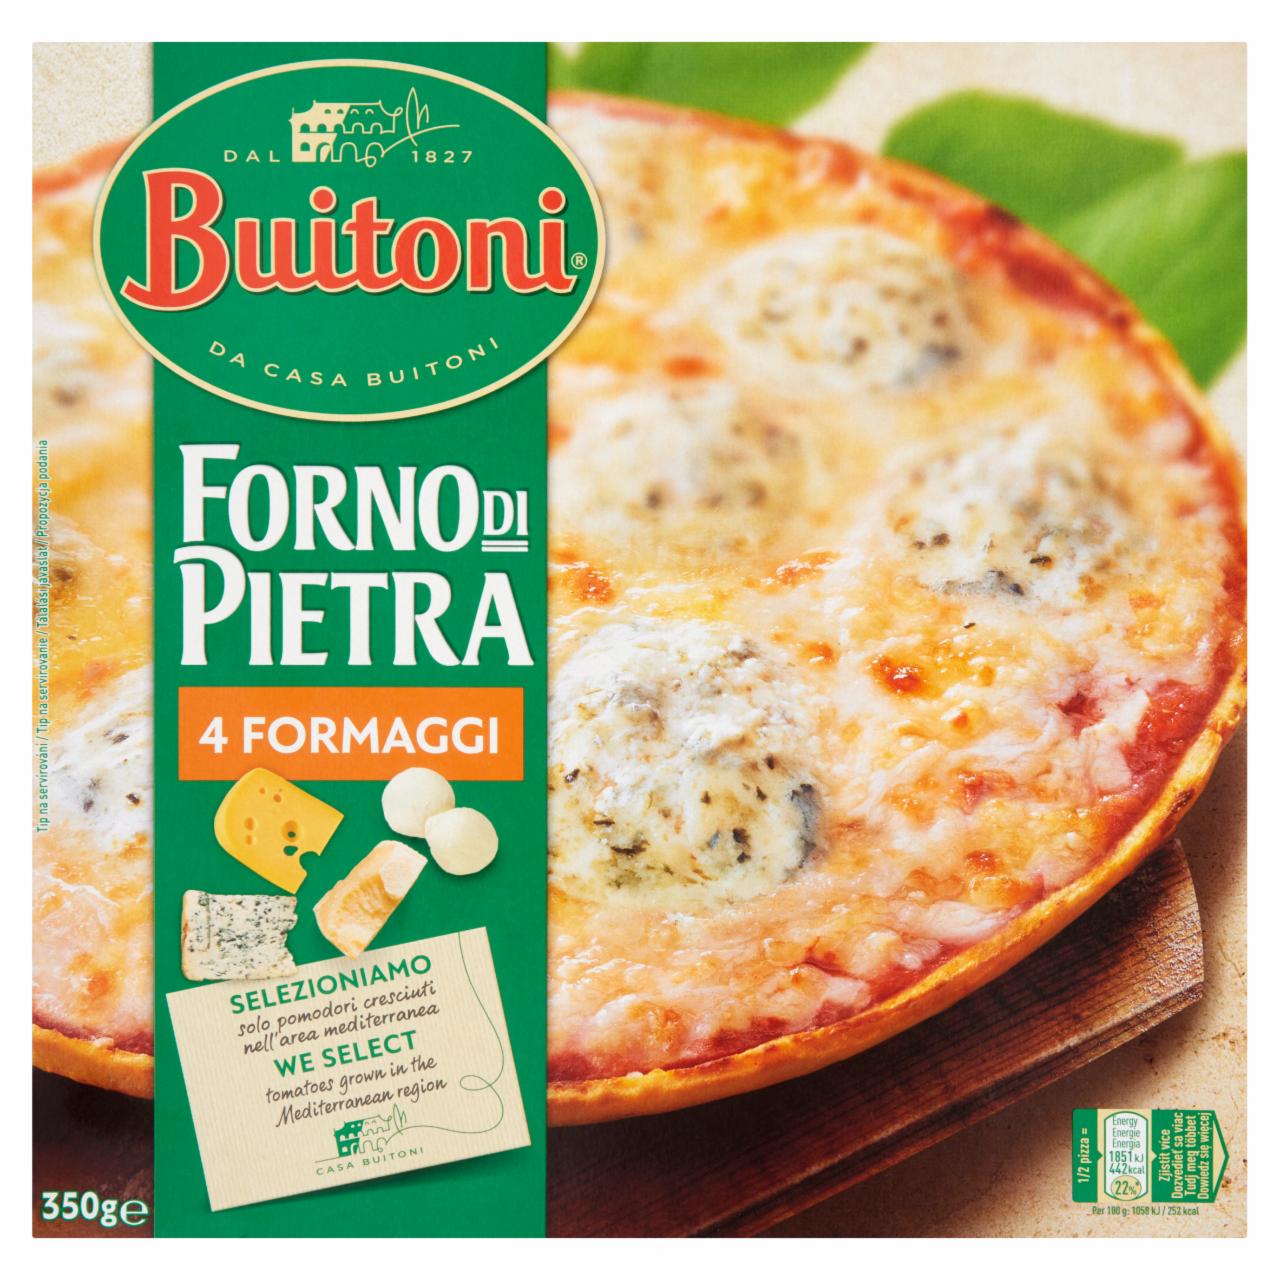 Képek - Buitoni Forno di Pietra gyorsfagyasztott négysajtos pizza 350 g